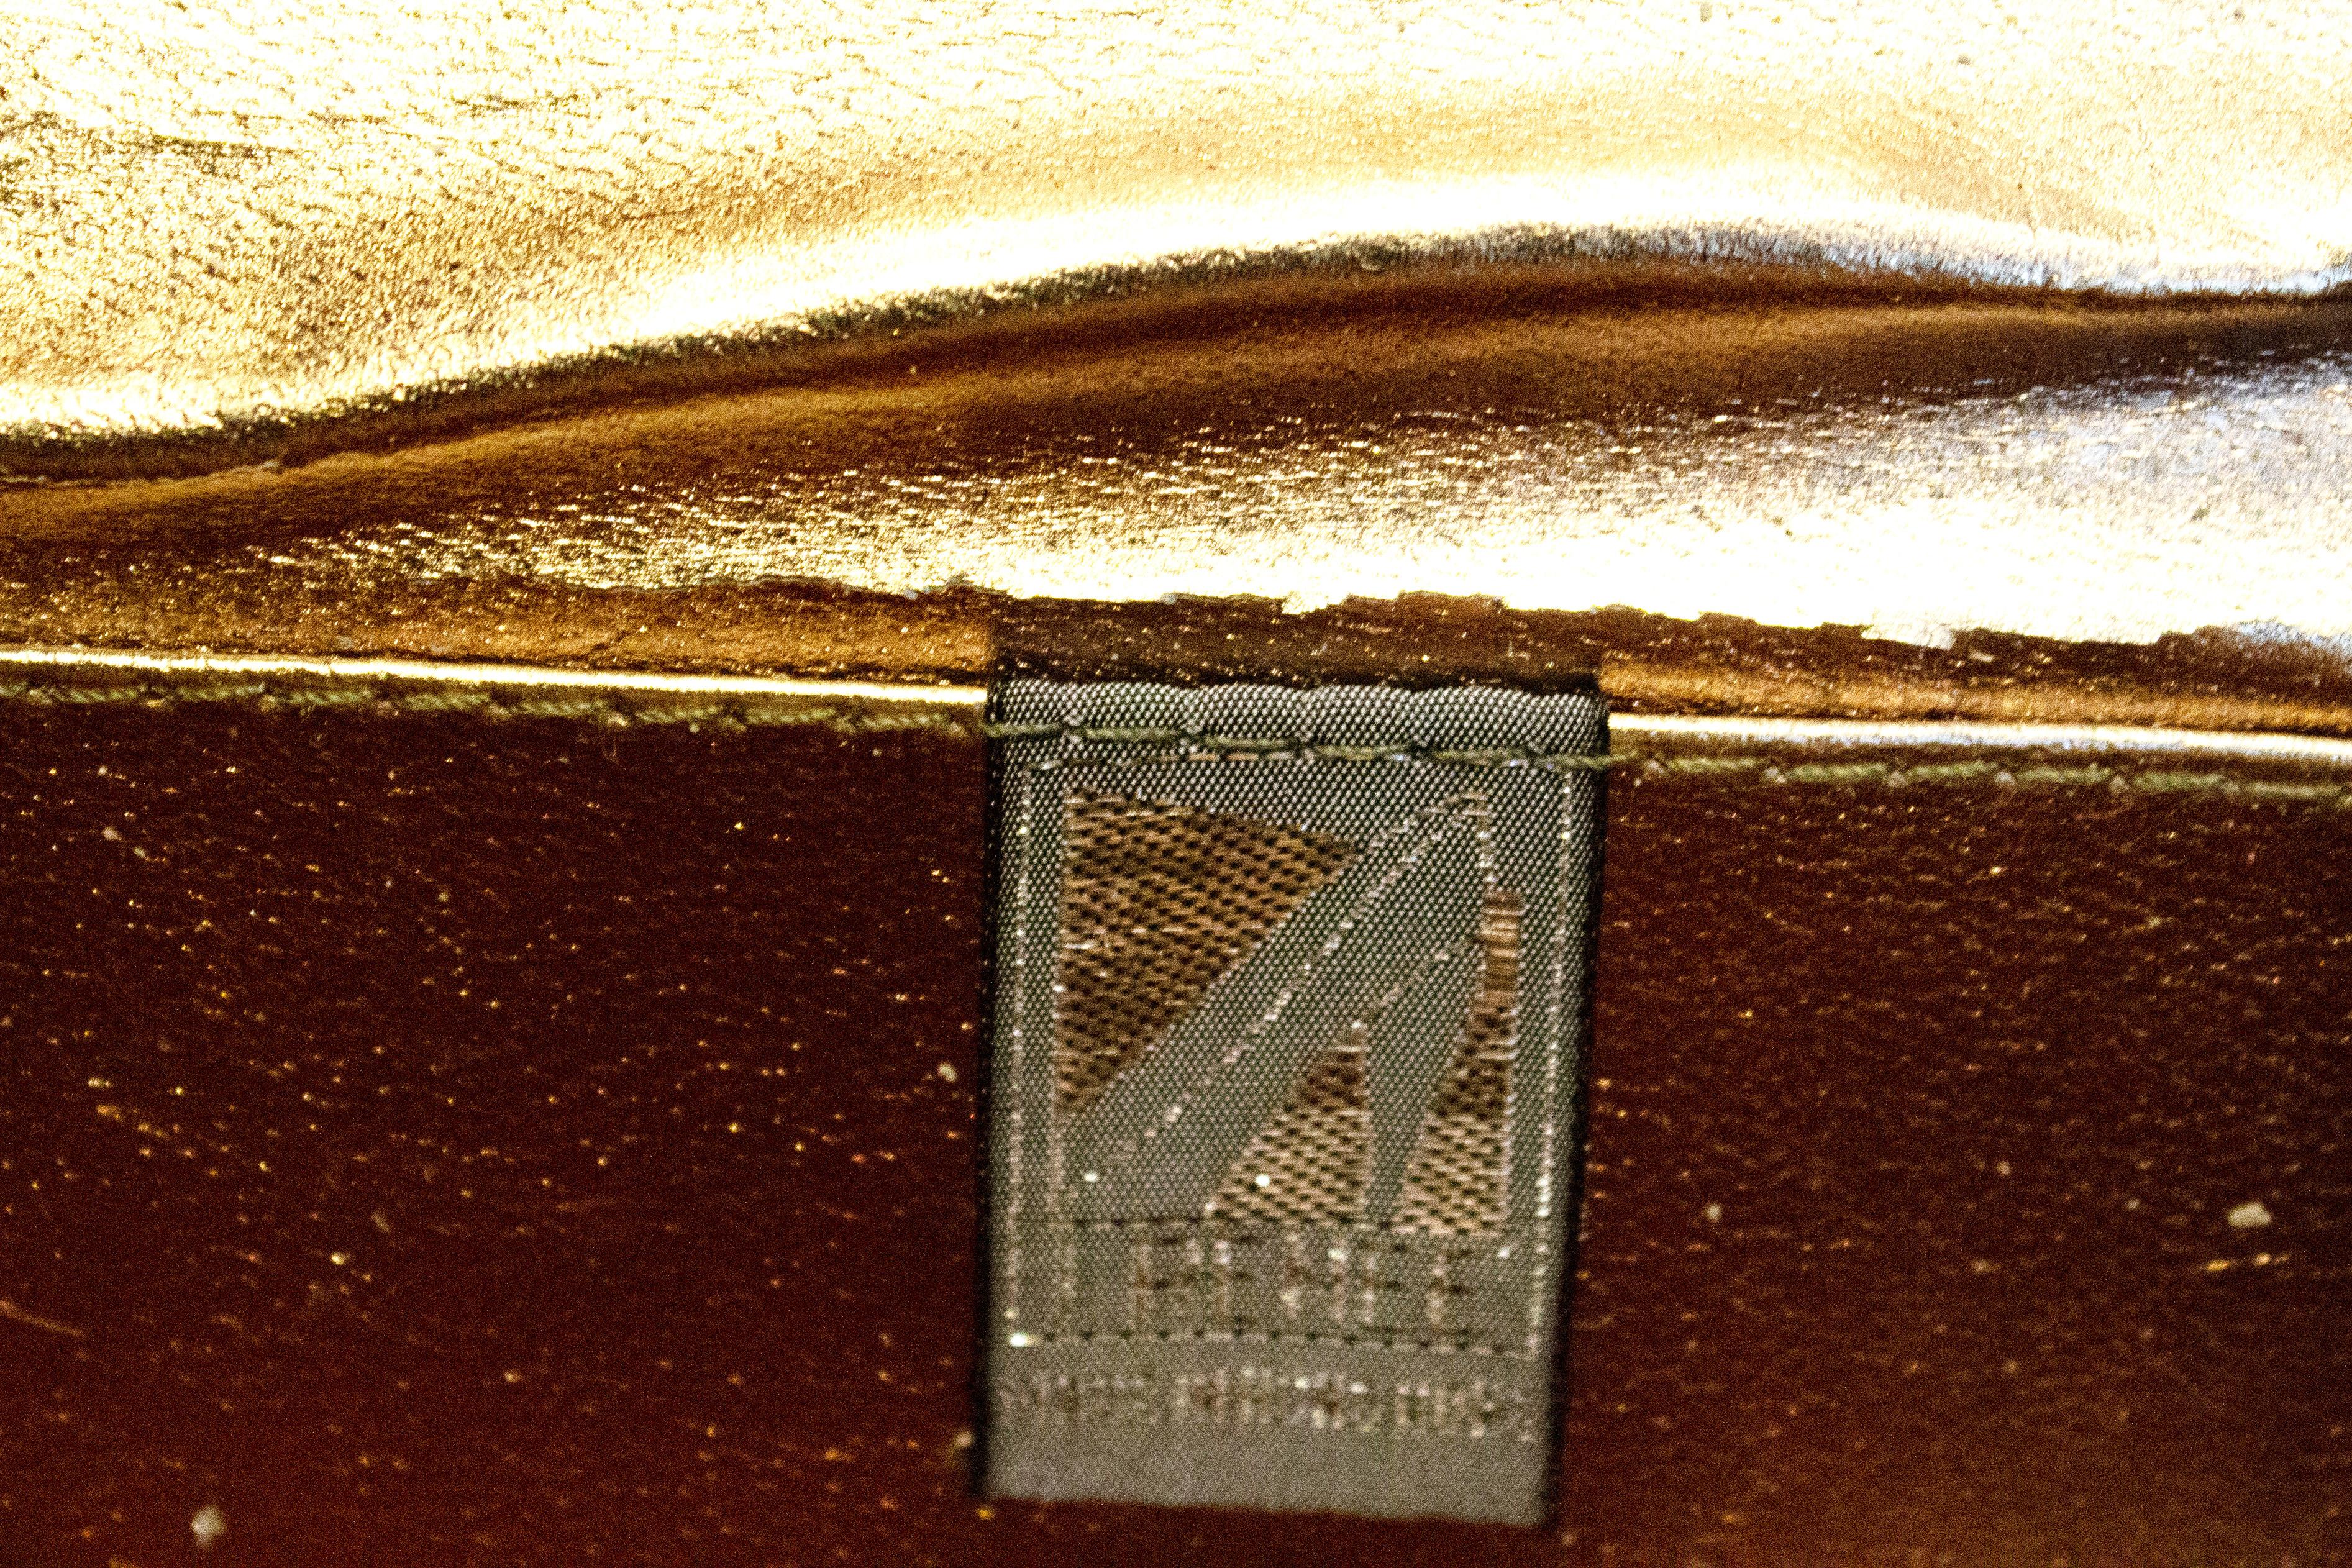 Un sac à main vintage chic de J Renee. D'une douce couleur bronze, le sac à main est doté d'une sangle interne détachable et peut donc être utilisé comme pochette ou sac à main.
Dimensions : largeur 9'', hauteur 5'', profondeur 2''